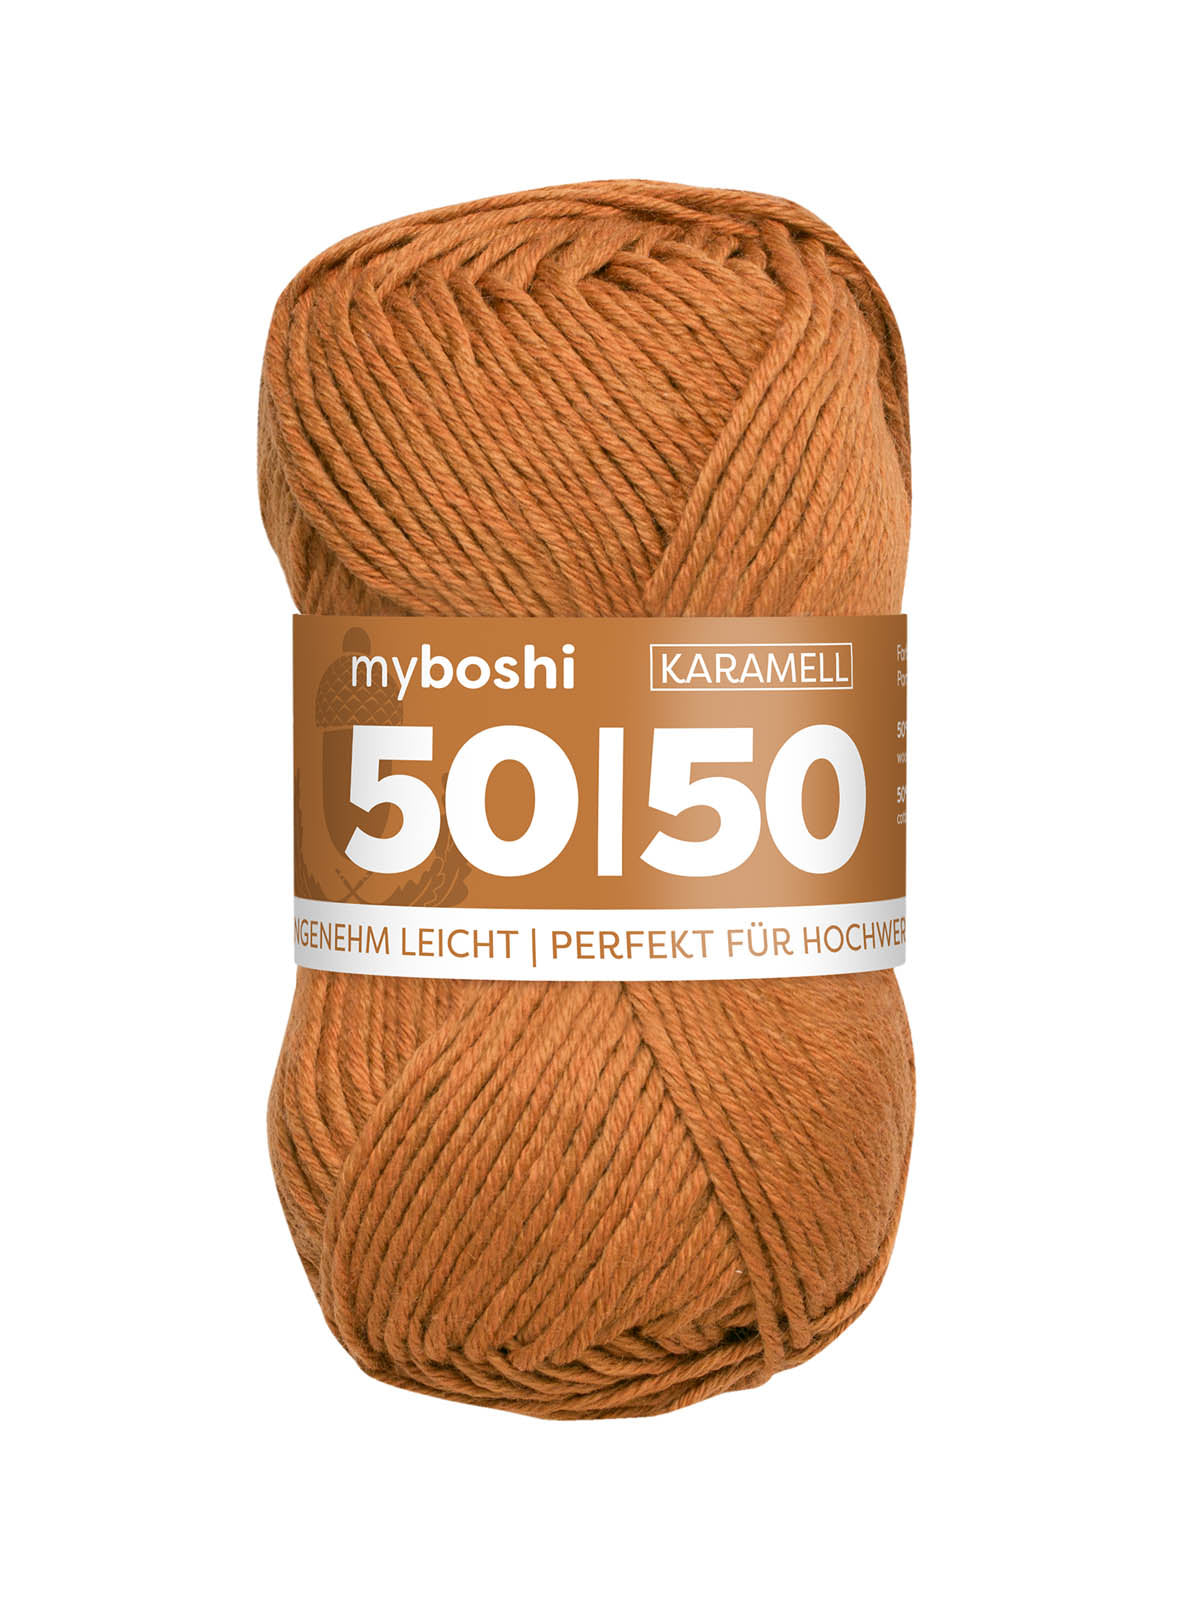 50/50 myboshi, Farbe karamell 973